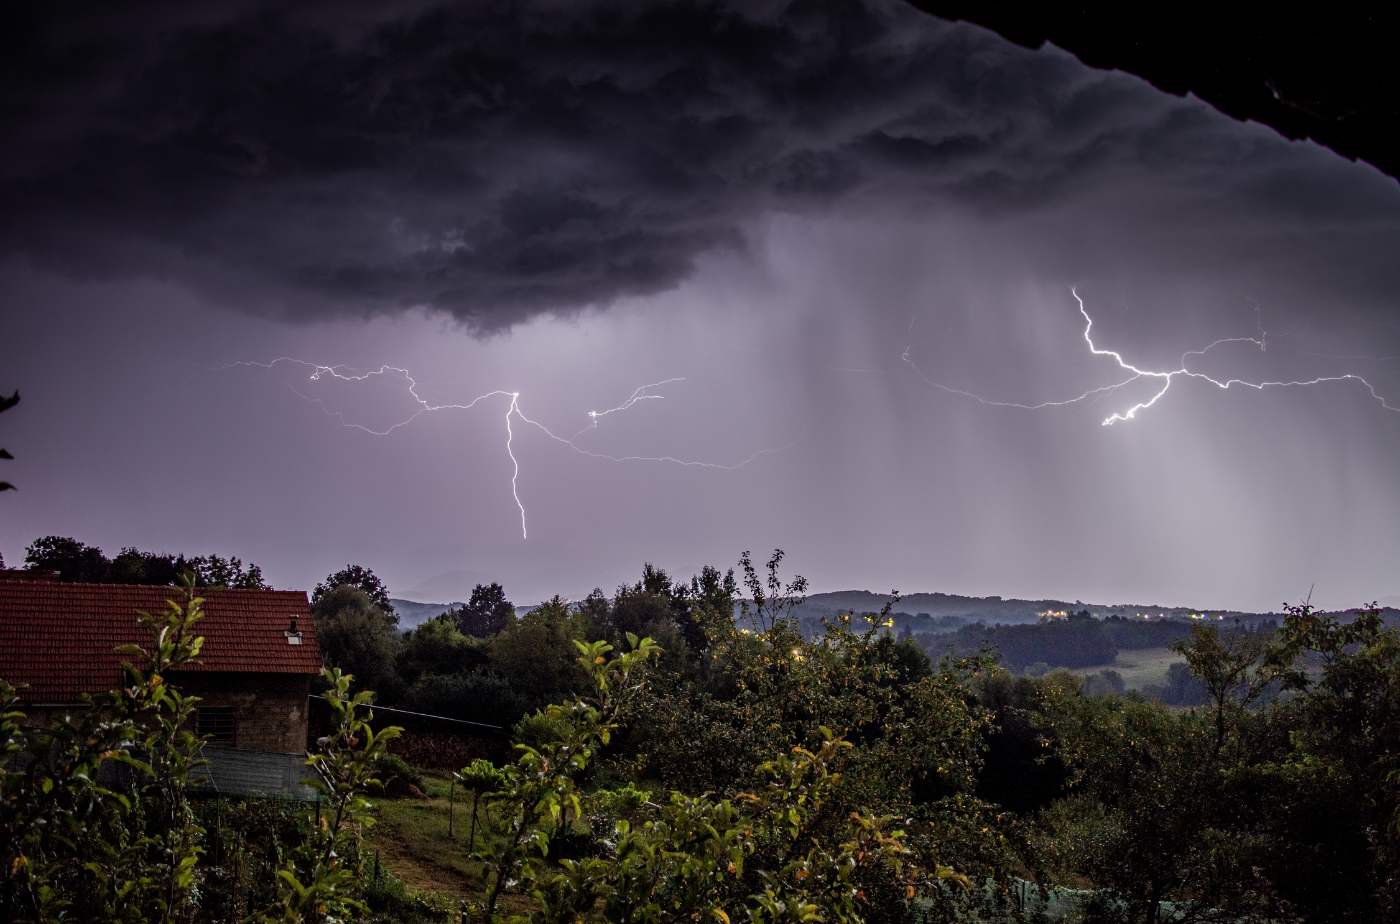 Am Wochenende war auch der Lahn-Dill-Kreis von starken Gewittern betroffen. Foto: Anton Kudryashow von Pexels via canva.com